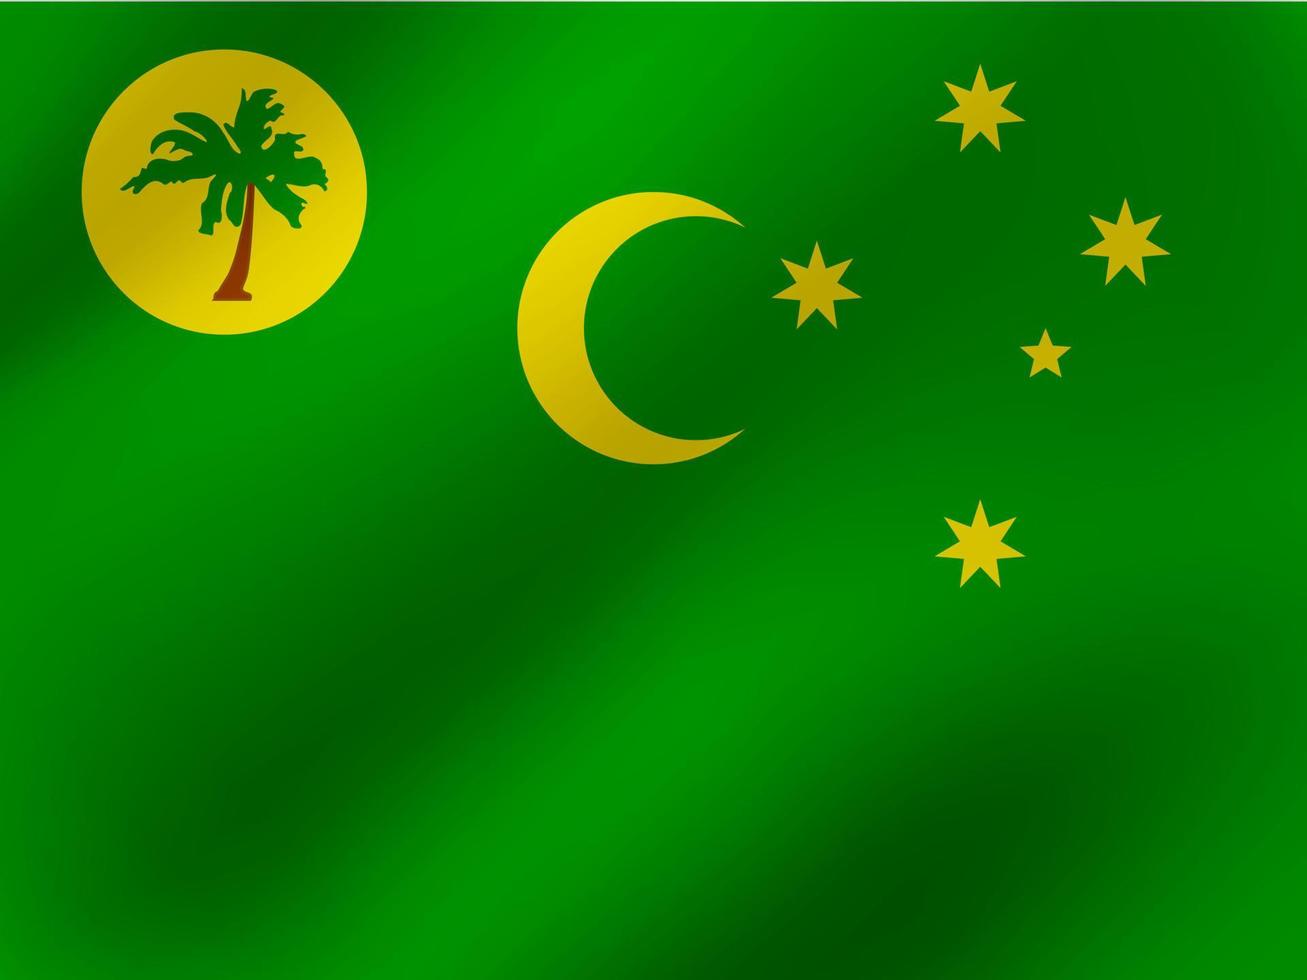 illustrazione ondulata realistica di vettore del design della bandiera dell'isola di cocos o keeling